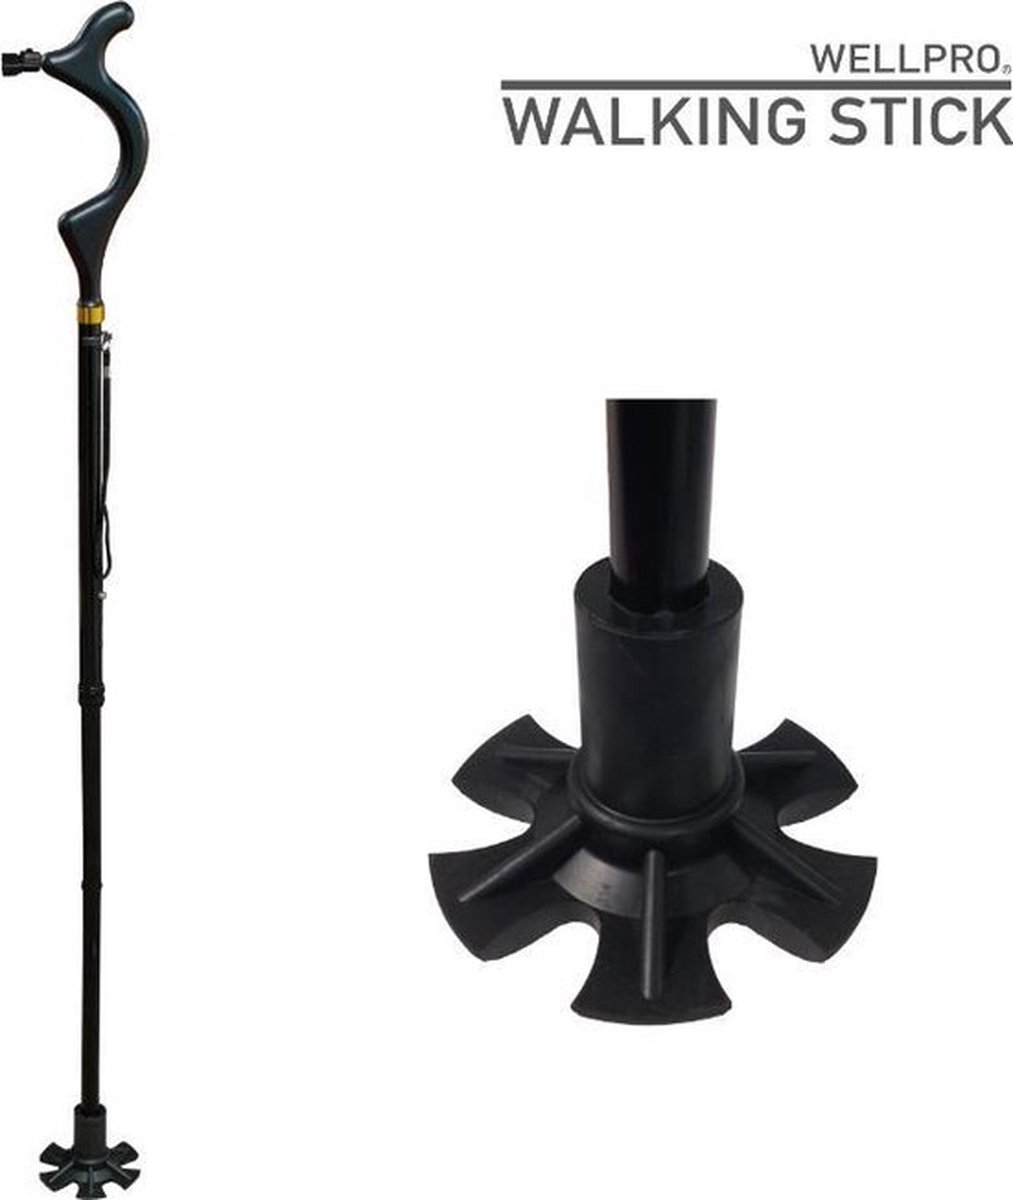 Wandelstok Wellpro - Walking Stick - Wandelstok - Veilig Wandelen - Verstelbaar - Met LED Verlichting